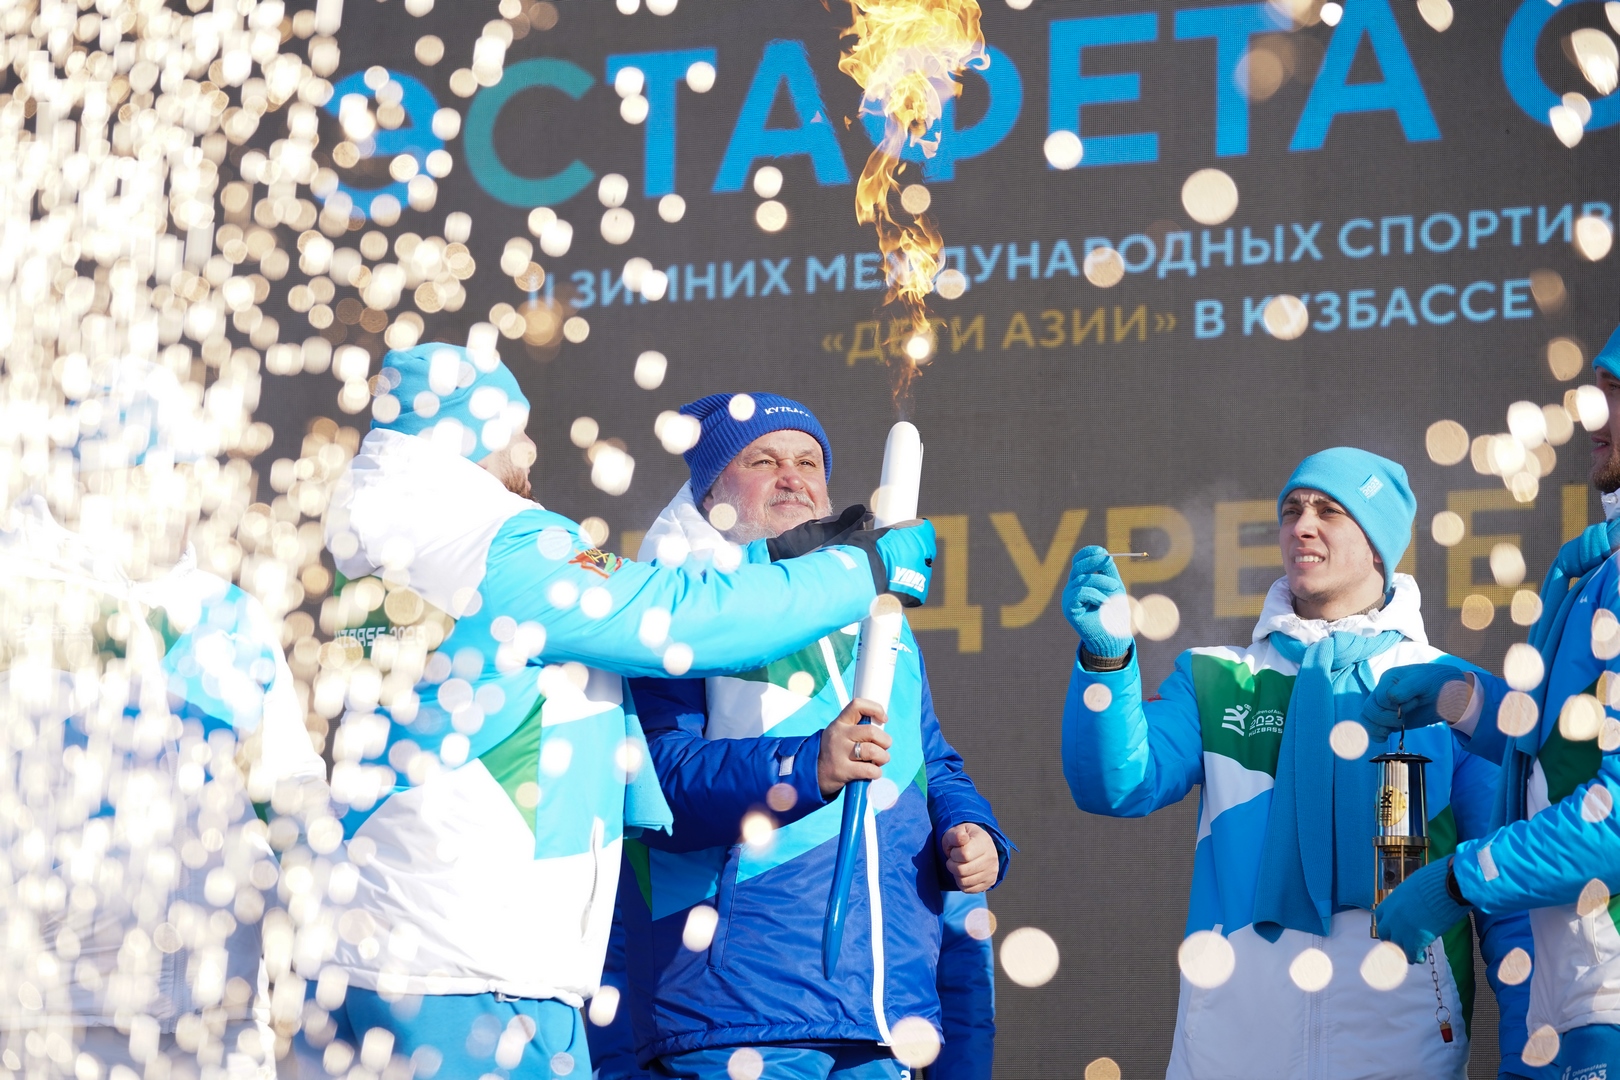 До старта II зимних Международных спортивных игр «Дети Азии» в Кузбассе осталось 10 дней